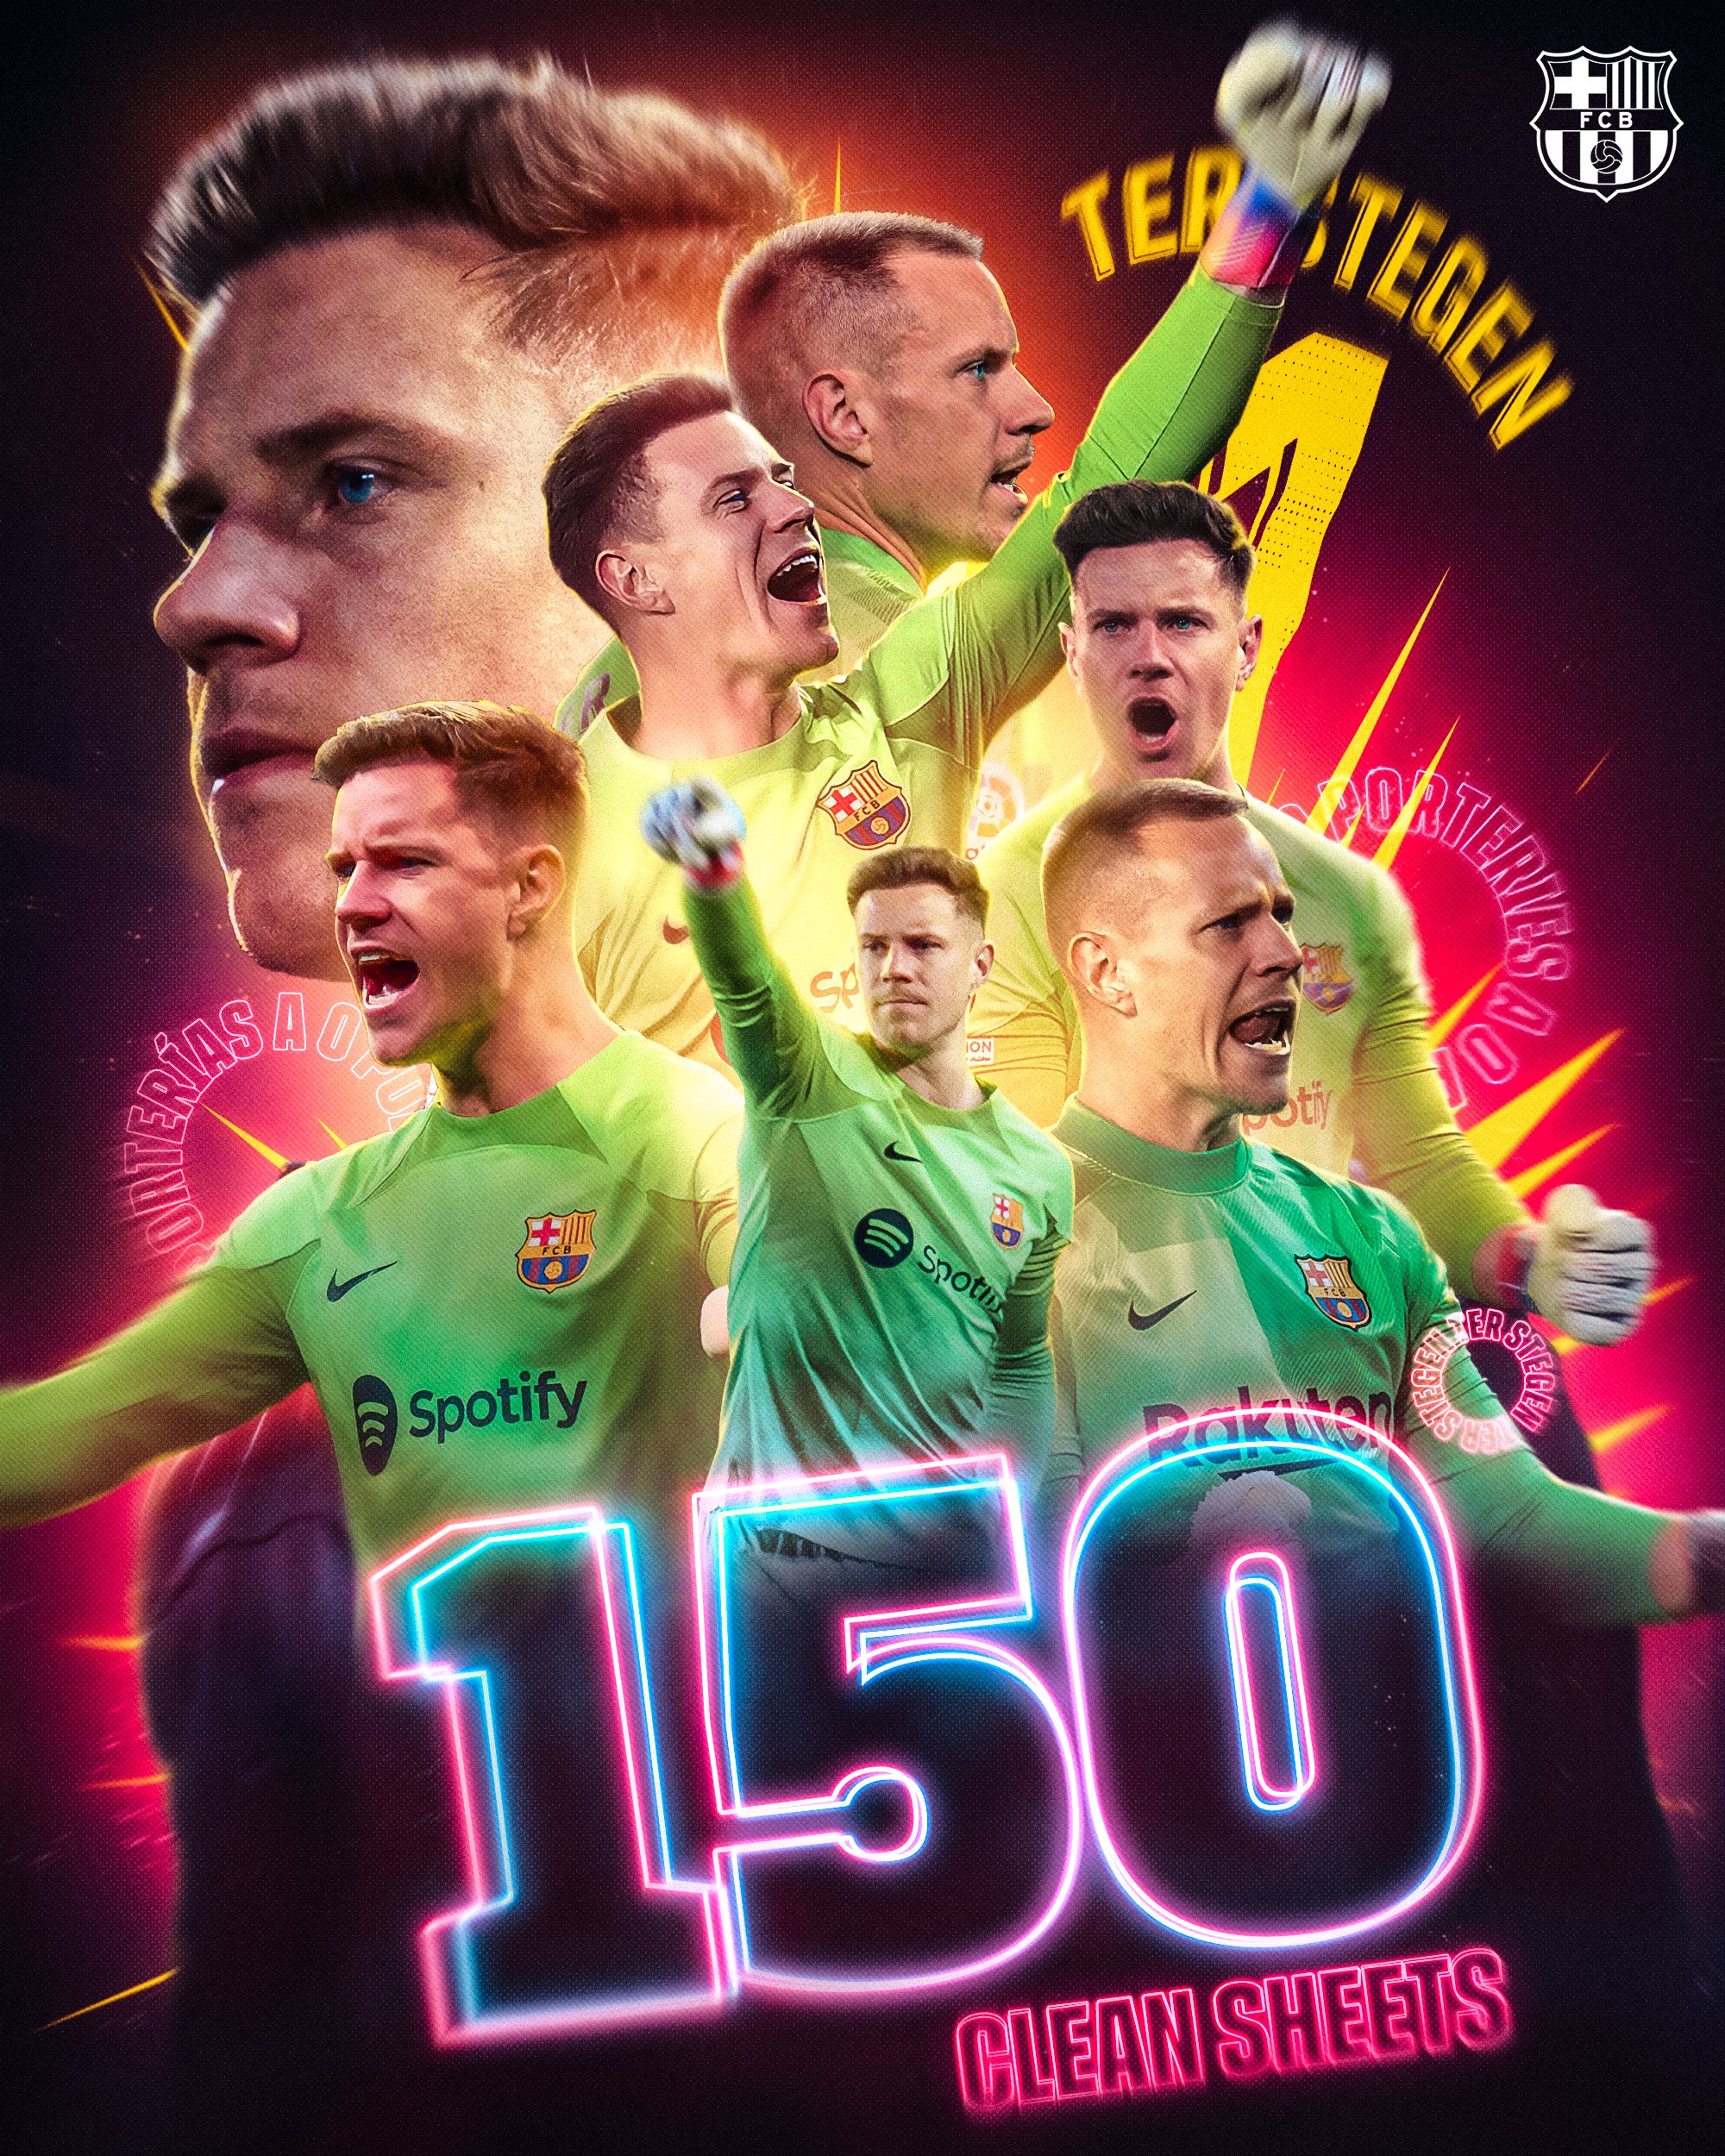 FC Barcelona on X: "150 career shutouts for Marc ter Stegen!  https://t.co/ECyutsLHJc" / X